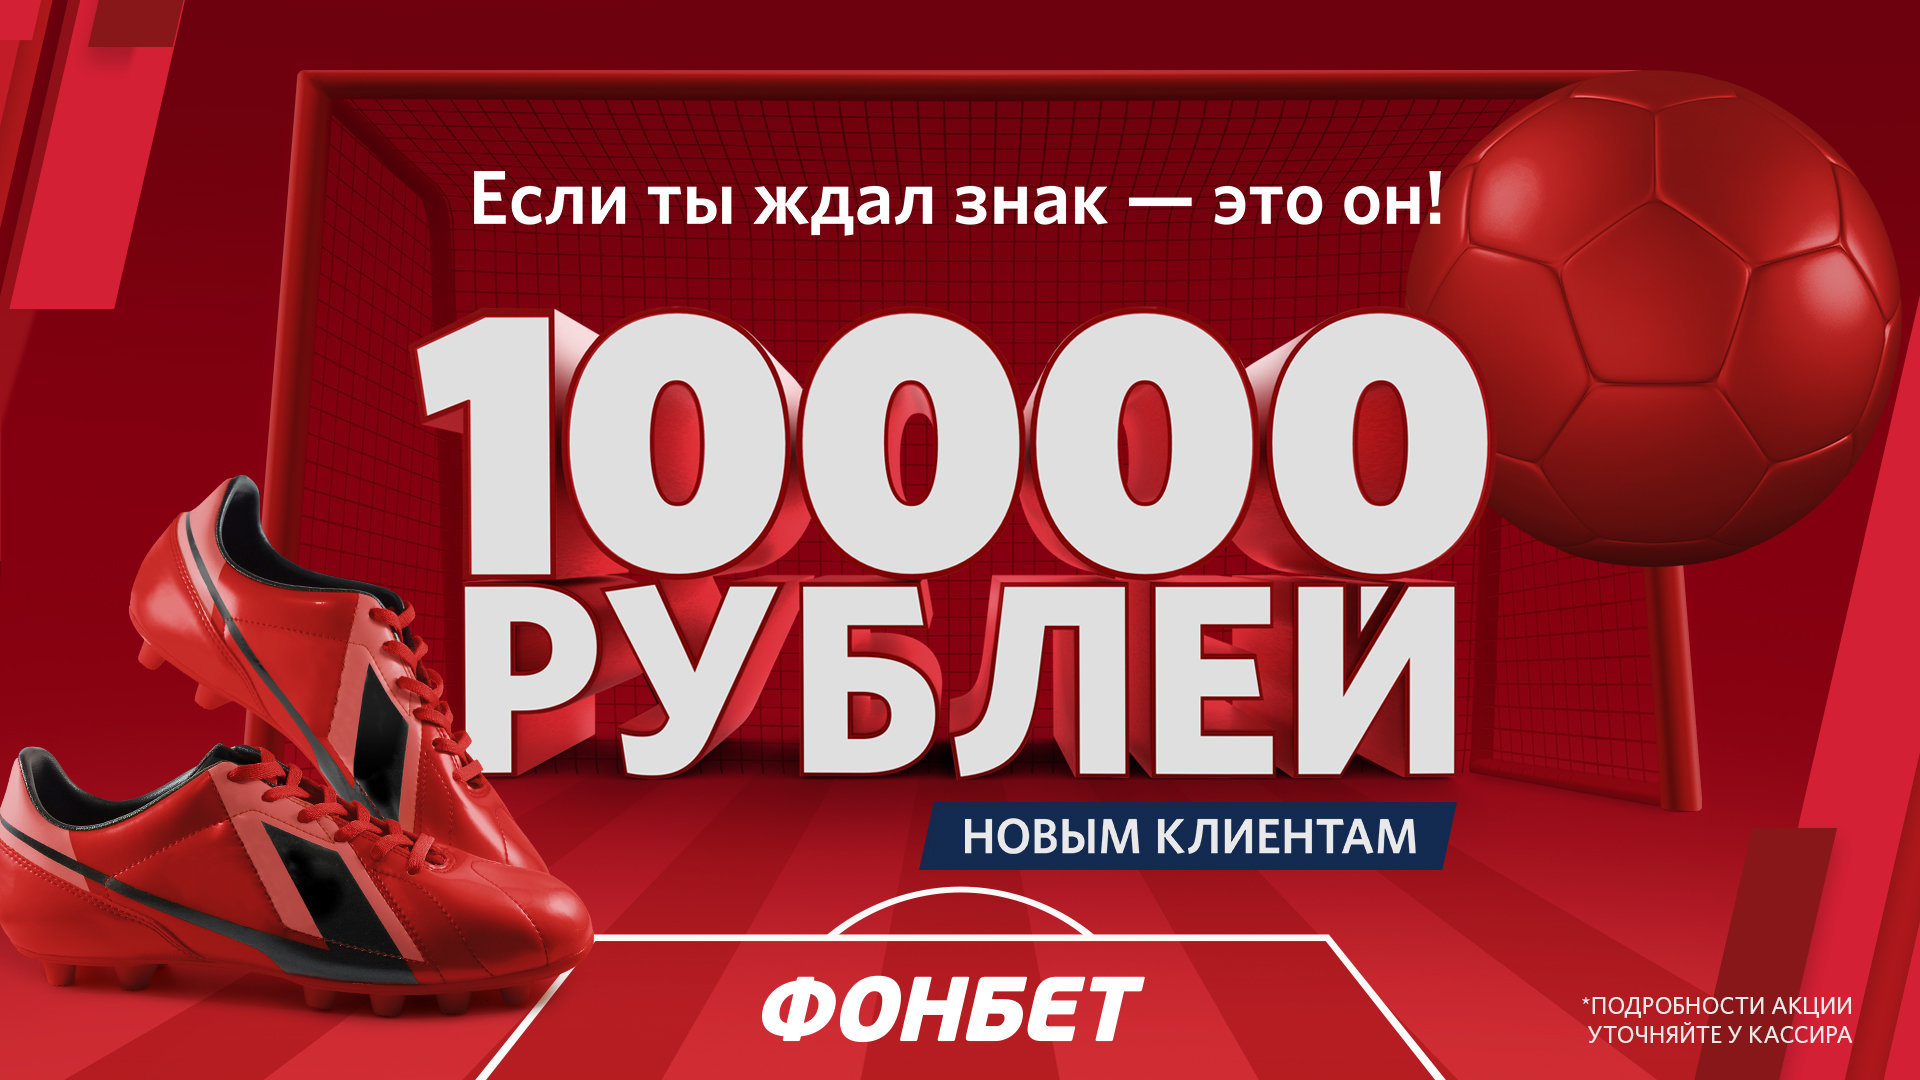 Украинская букмекерская контора с бонусом при регистрации казино онлайн на реальные деньги бесплатно